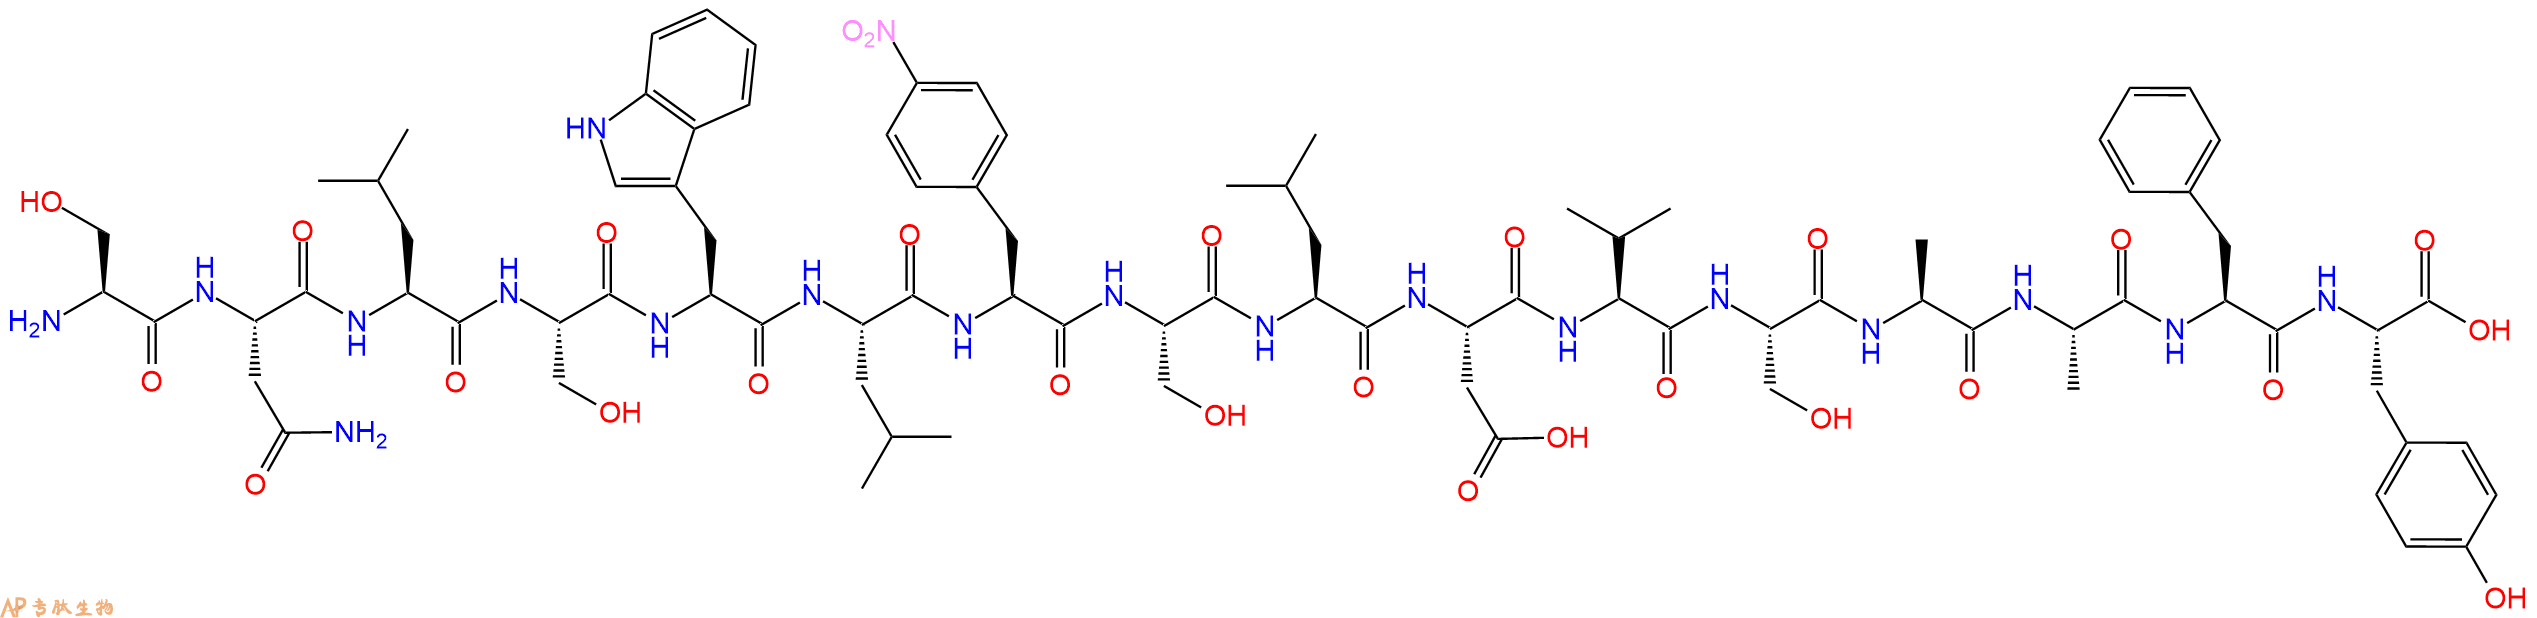 专肽生物产品H2N-Ser-Asn-Leu-Ser-Trp-Leu-Phe(4NO2)-Ser-Leu-Asp-